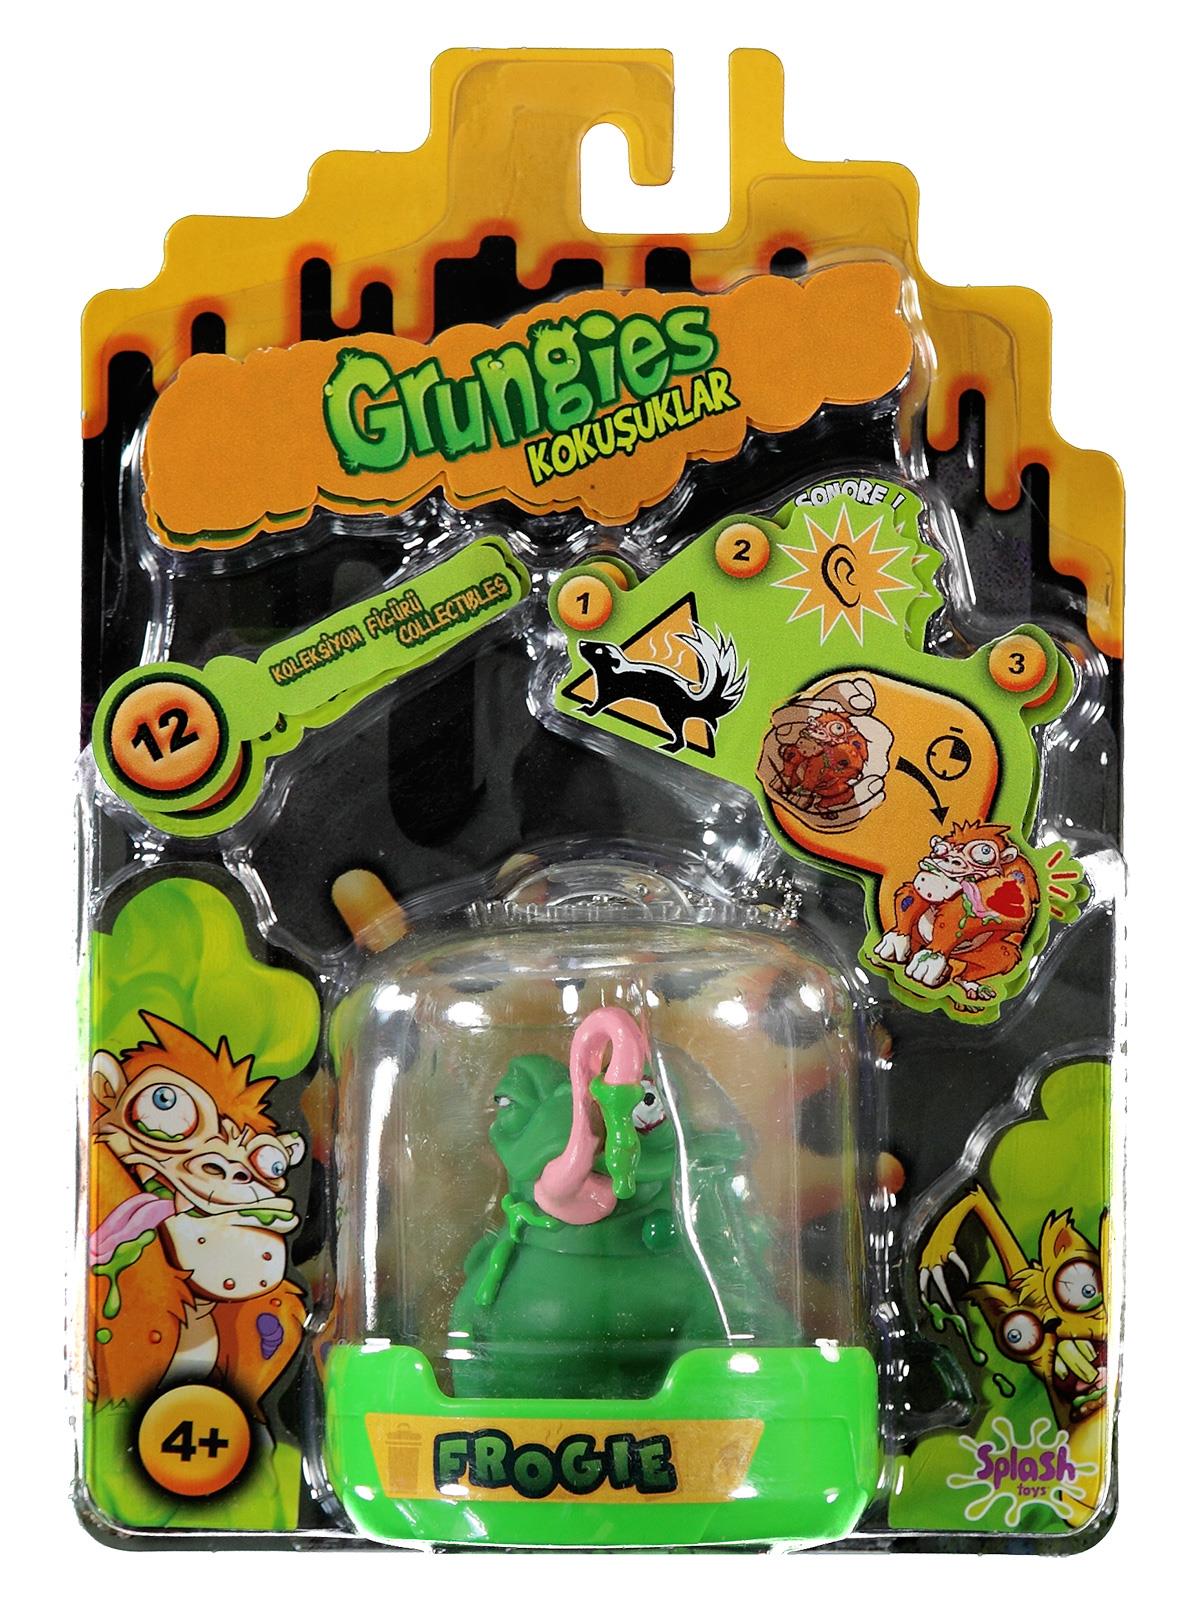 Grungies Mini Kokuşuklar Sıçrama Oyuncakları Yeşil 4+ Yaş